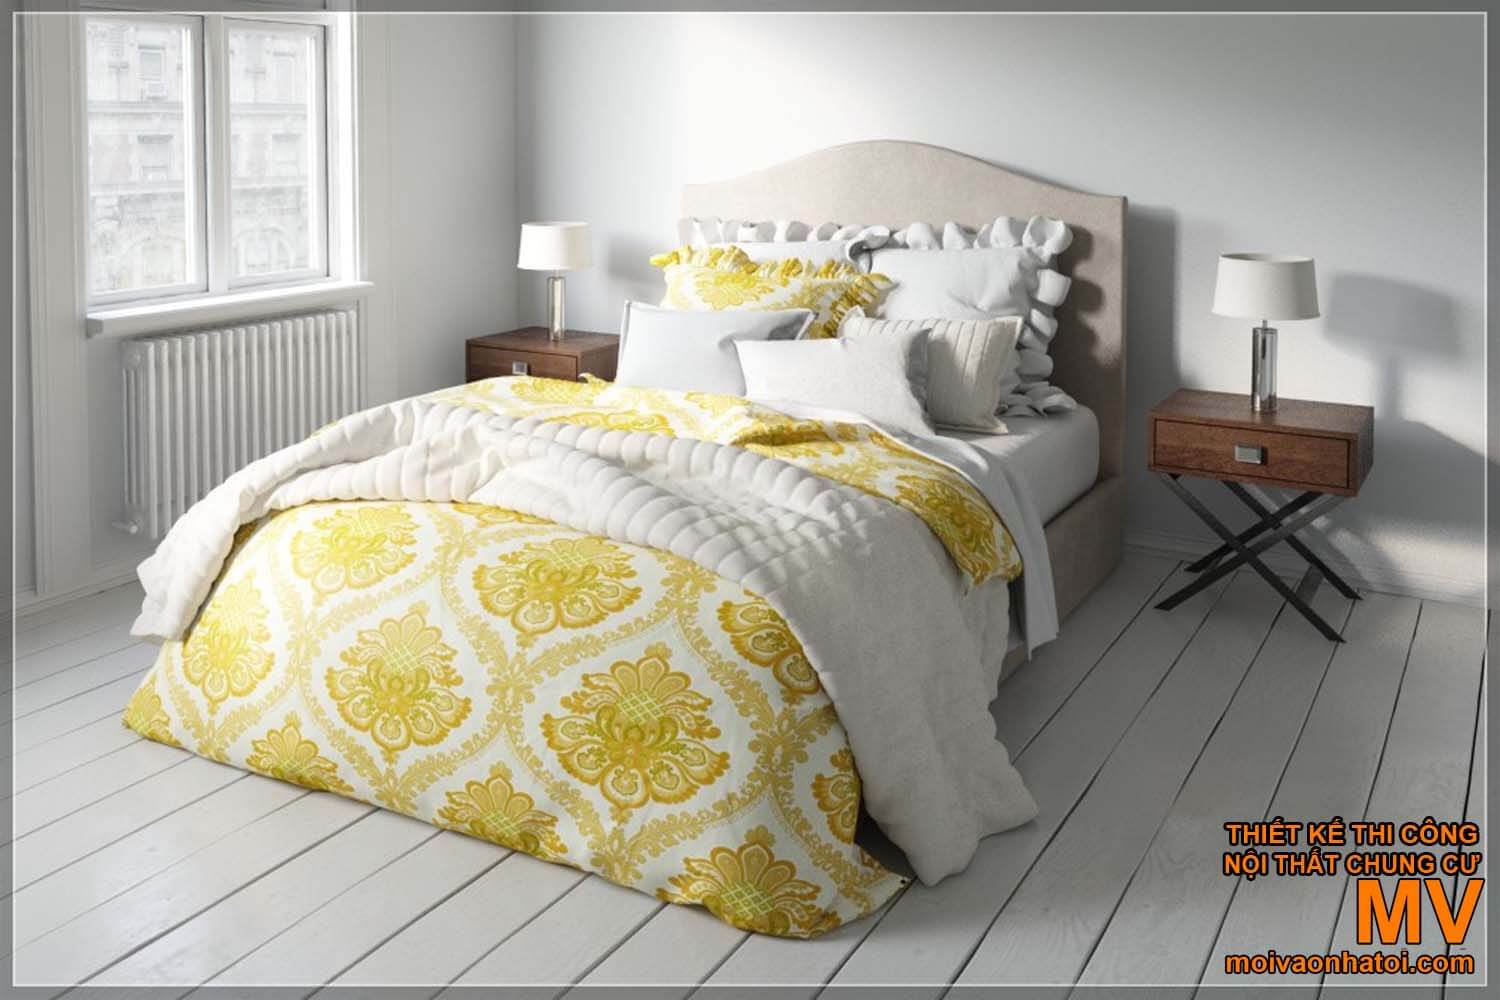 Thiết kế phòng ngủ - trang trí giường ngủ Scandinavian